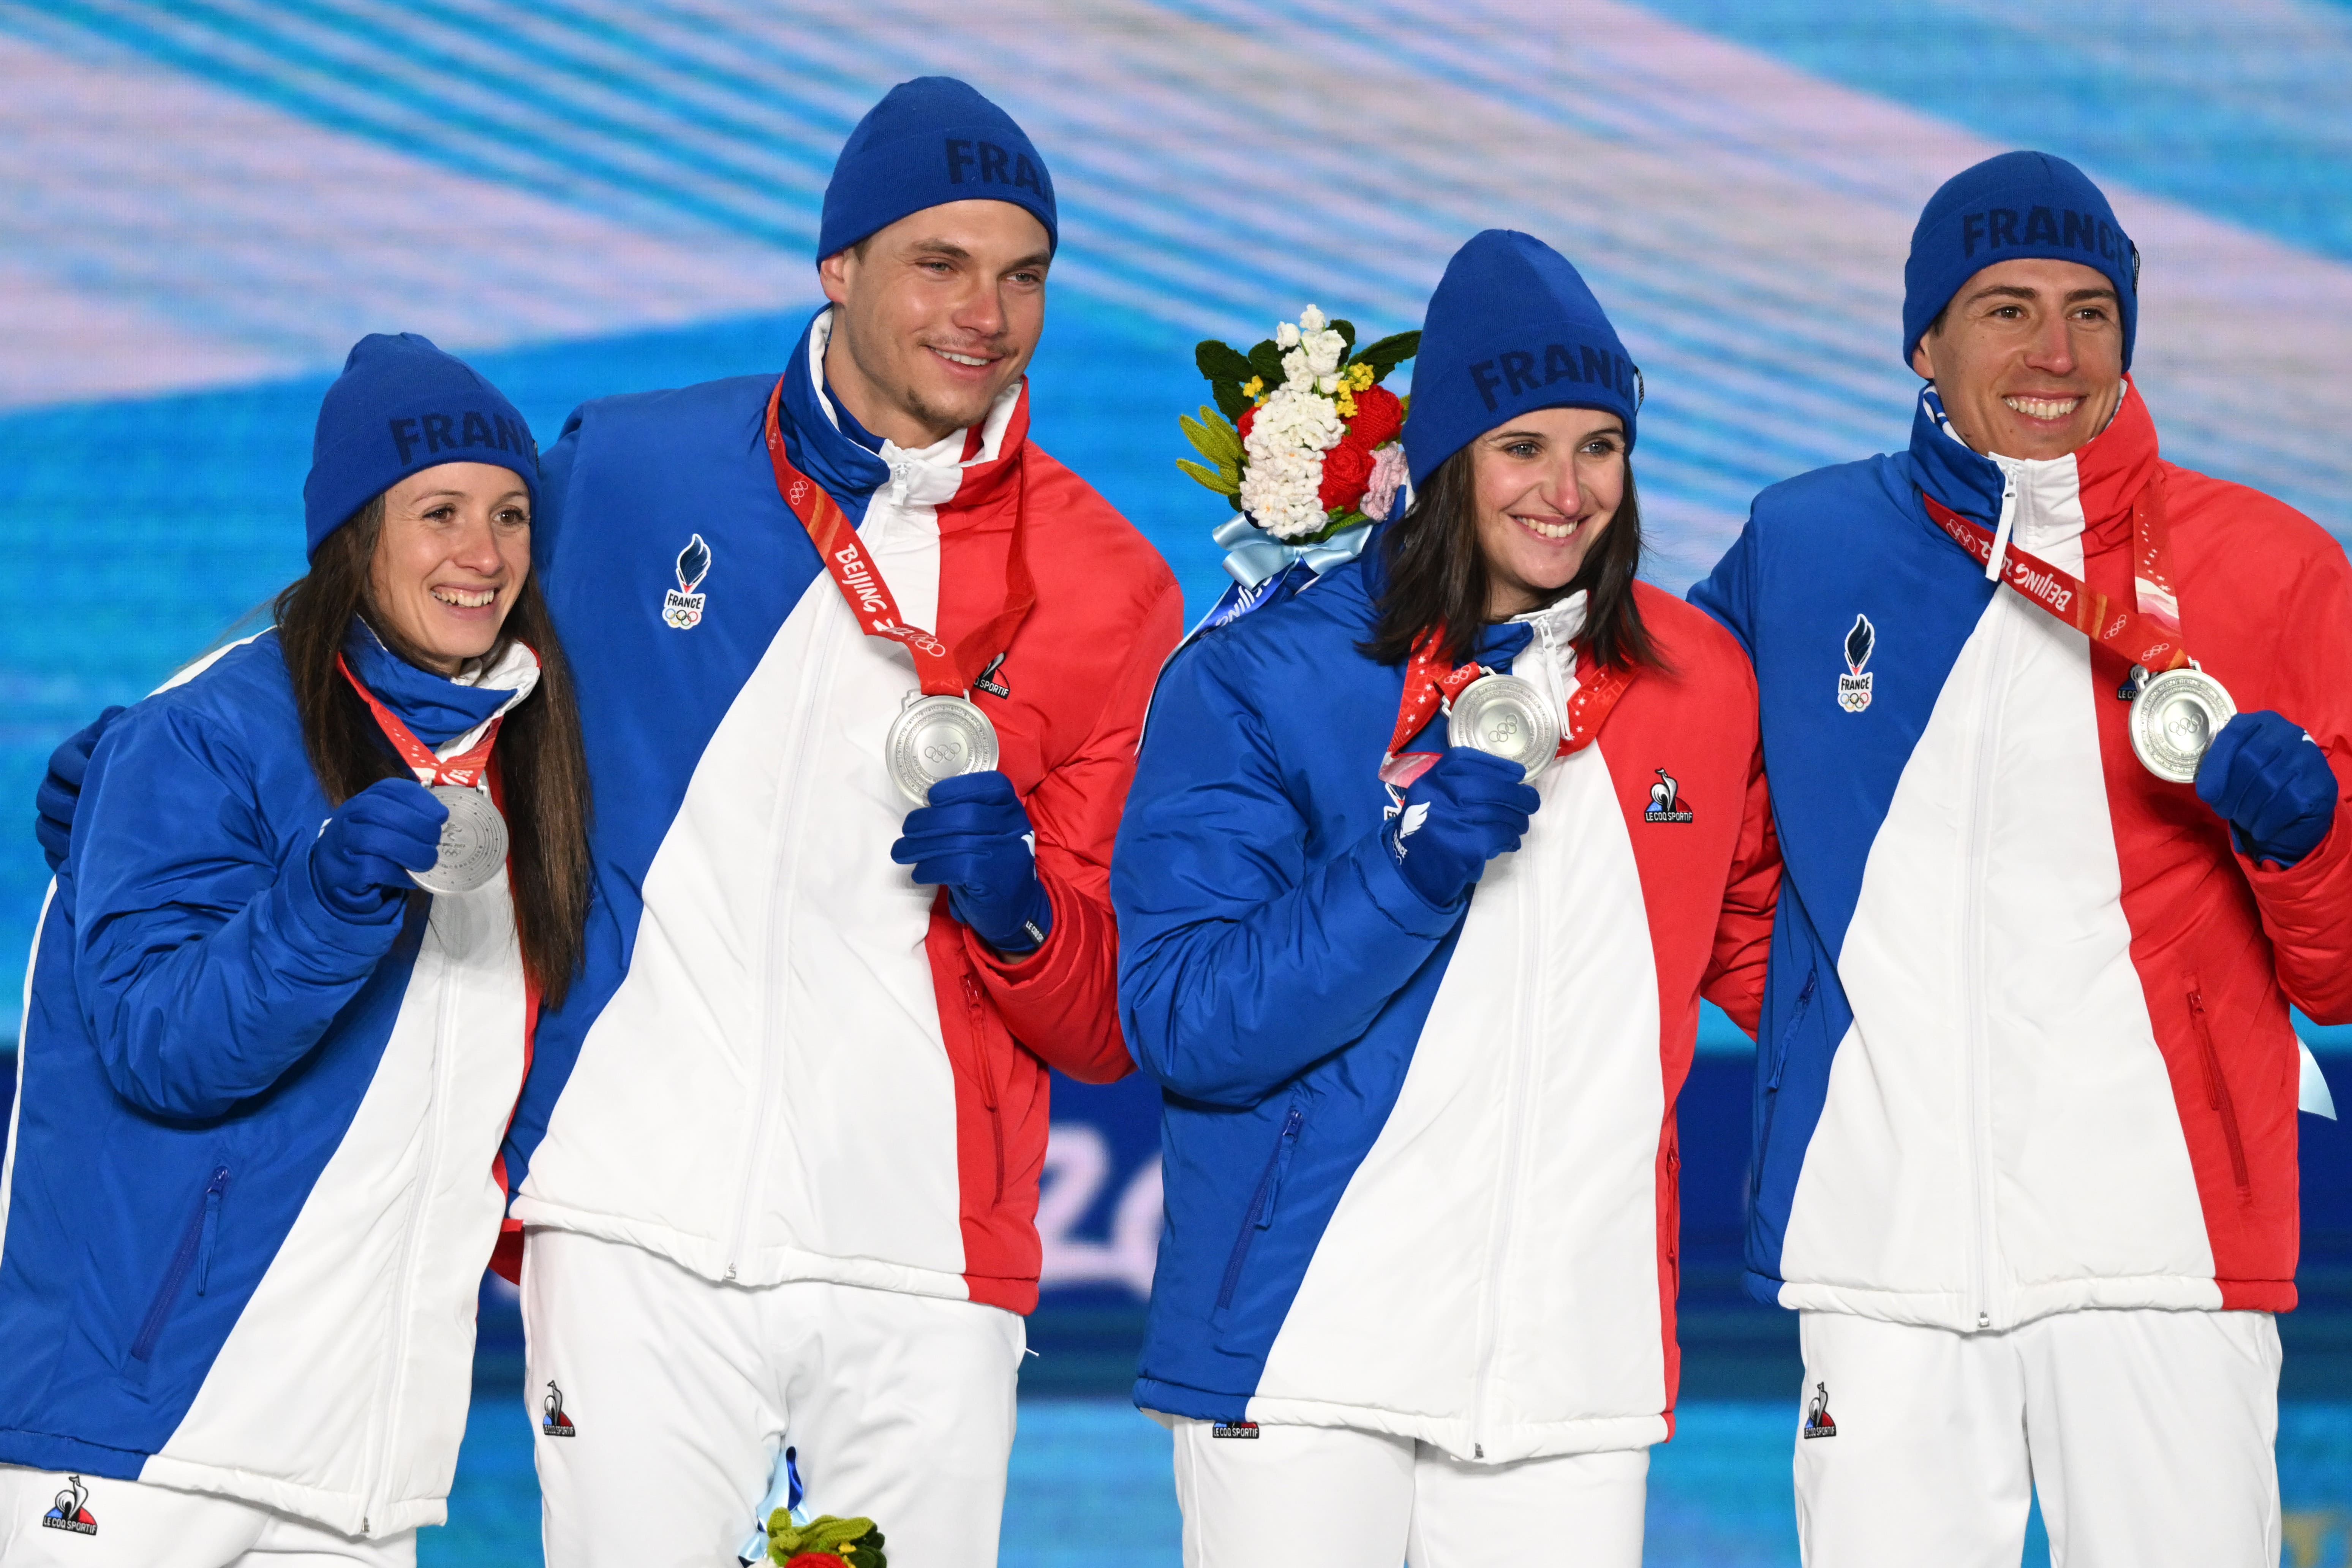 Biathlon relais mixte podium médaille d'argent - France Olympique - Quentin Fillon Maillet Julia Simon Anaïs Chevalier-Bouchet Emilien Jacquelin - Zhangjiakou